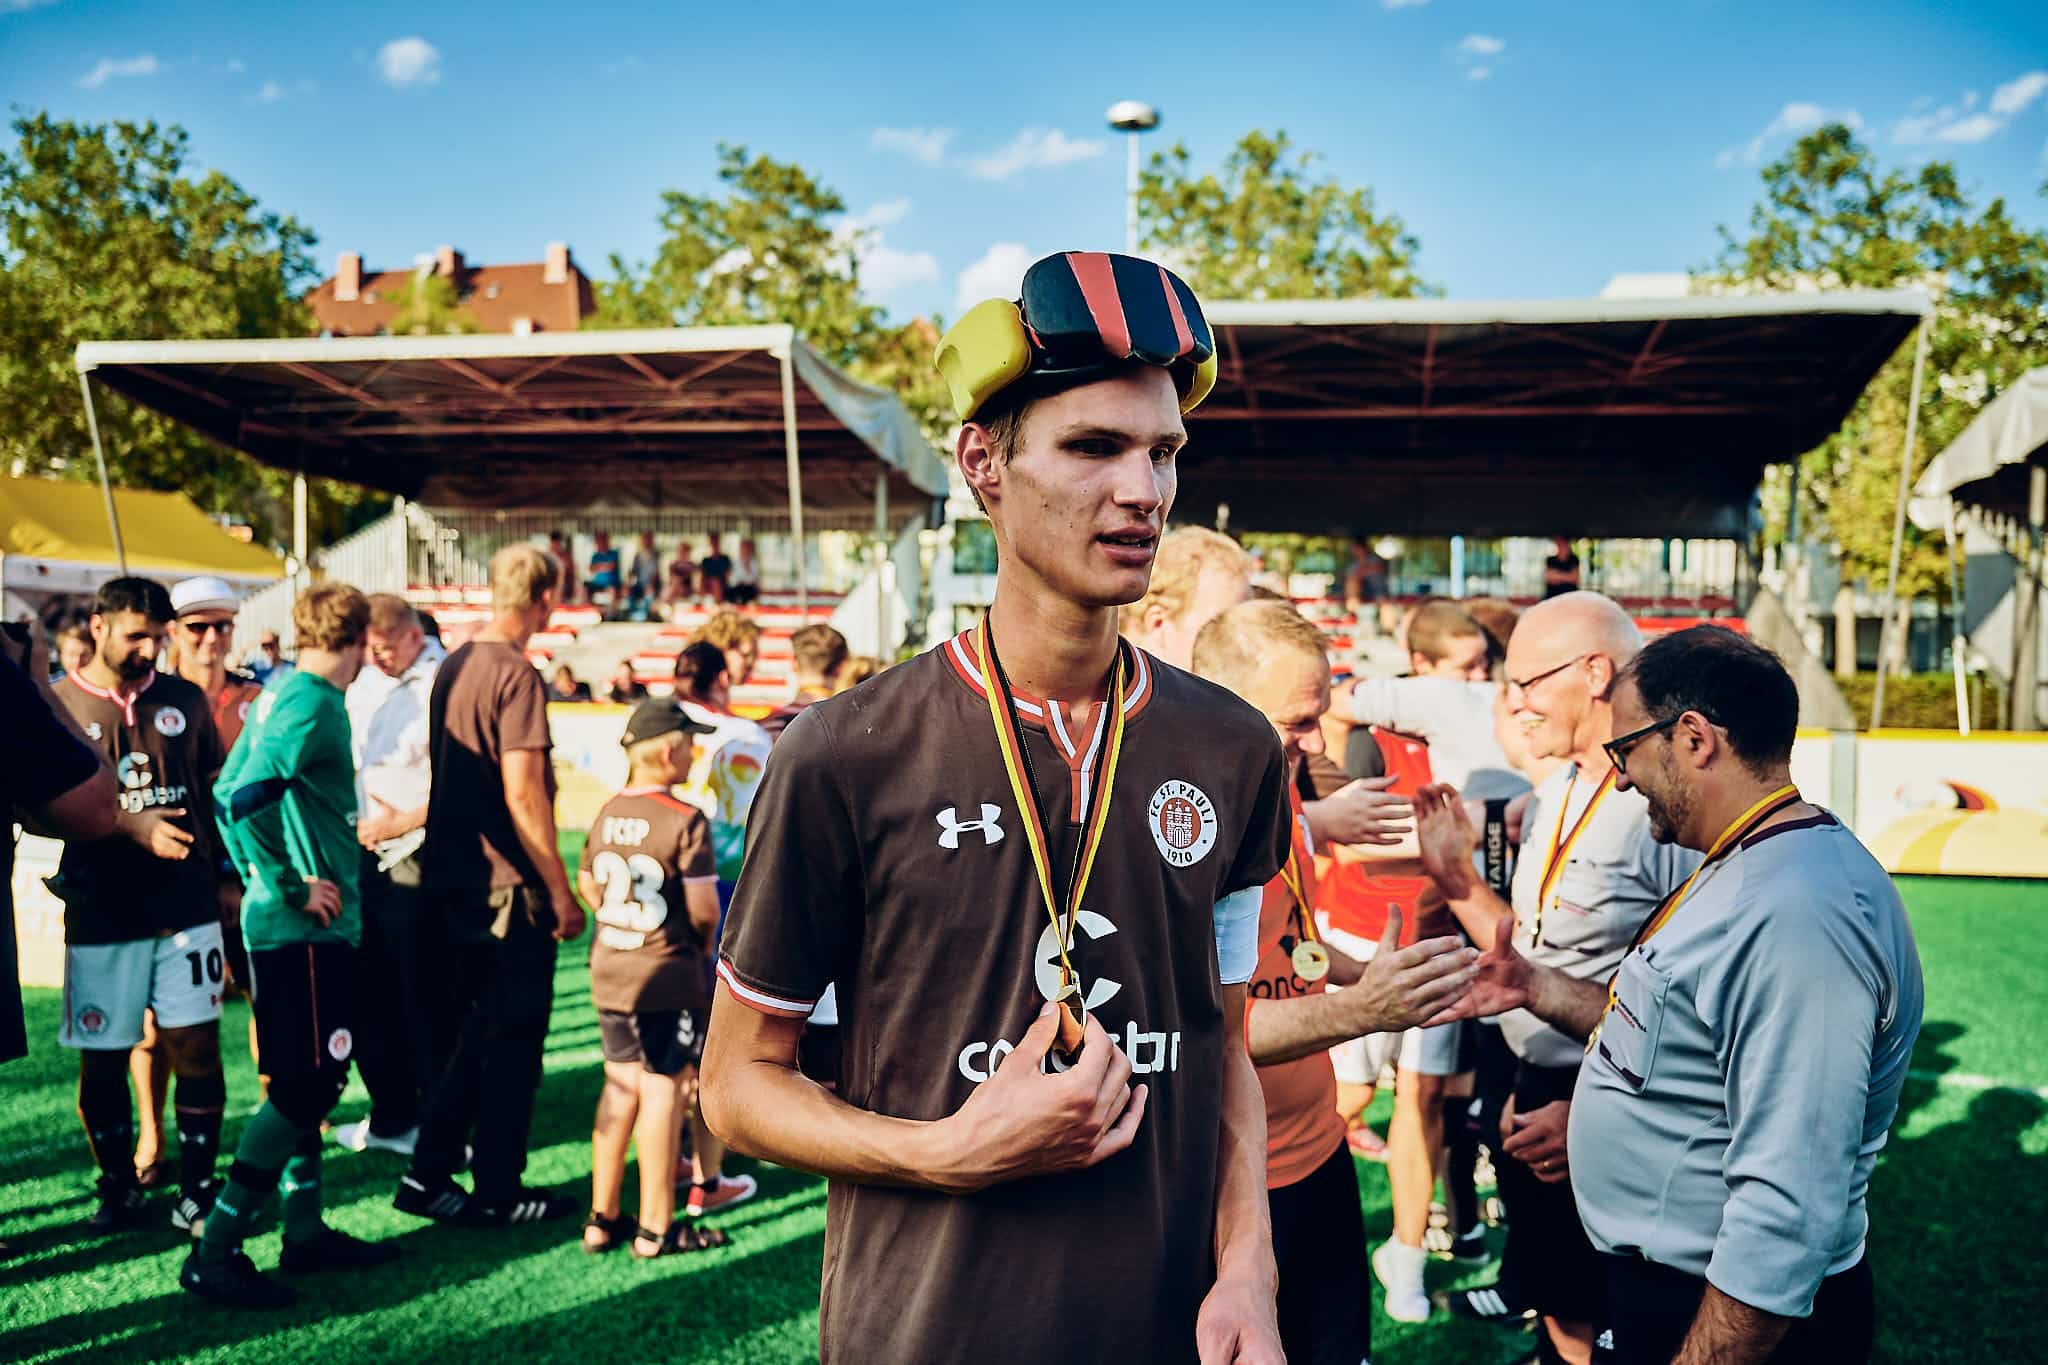 Rasmus Narjes vom FC St. Pauli Blindenfussball mit der silbernen Medaille des Vizemeisters